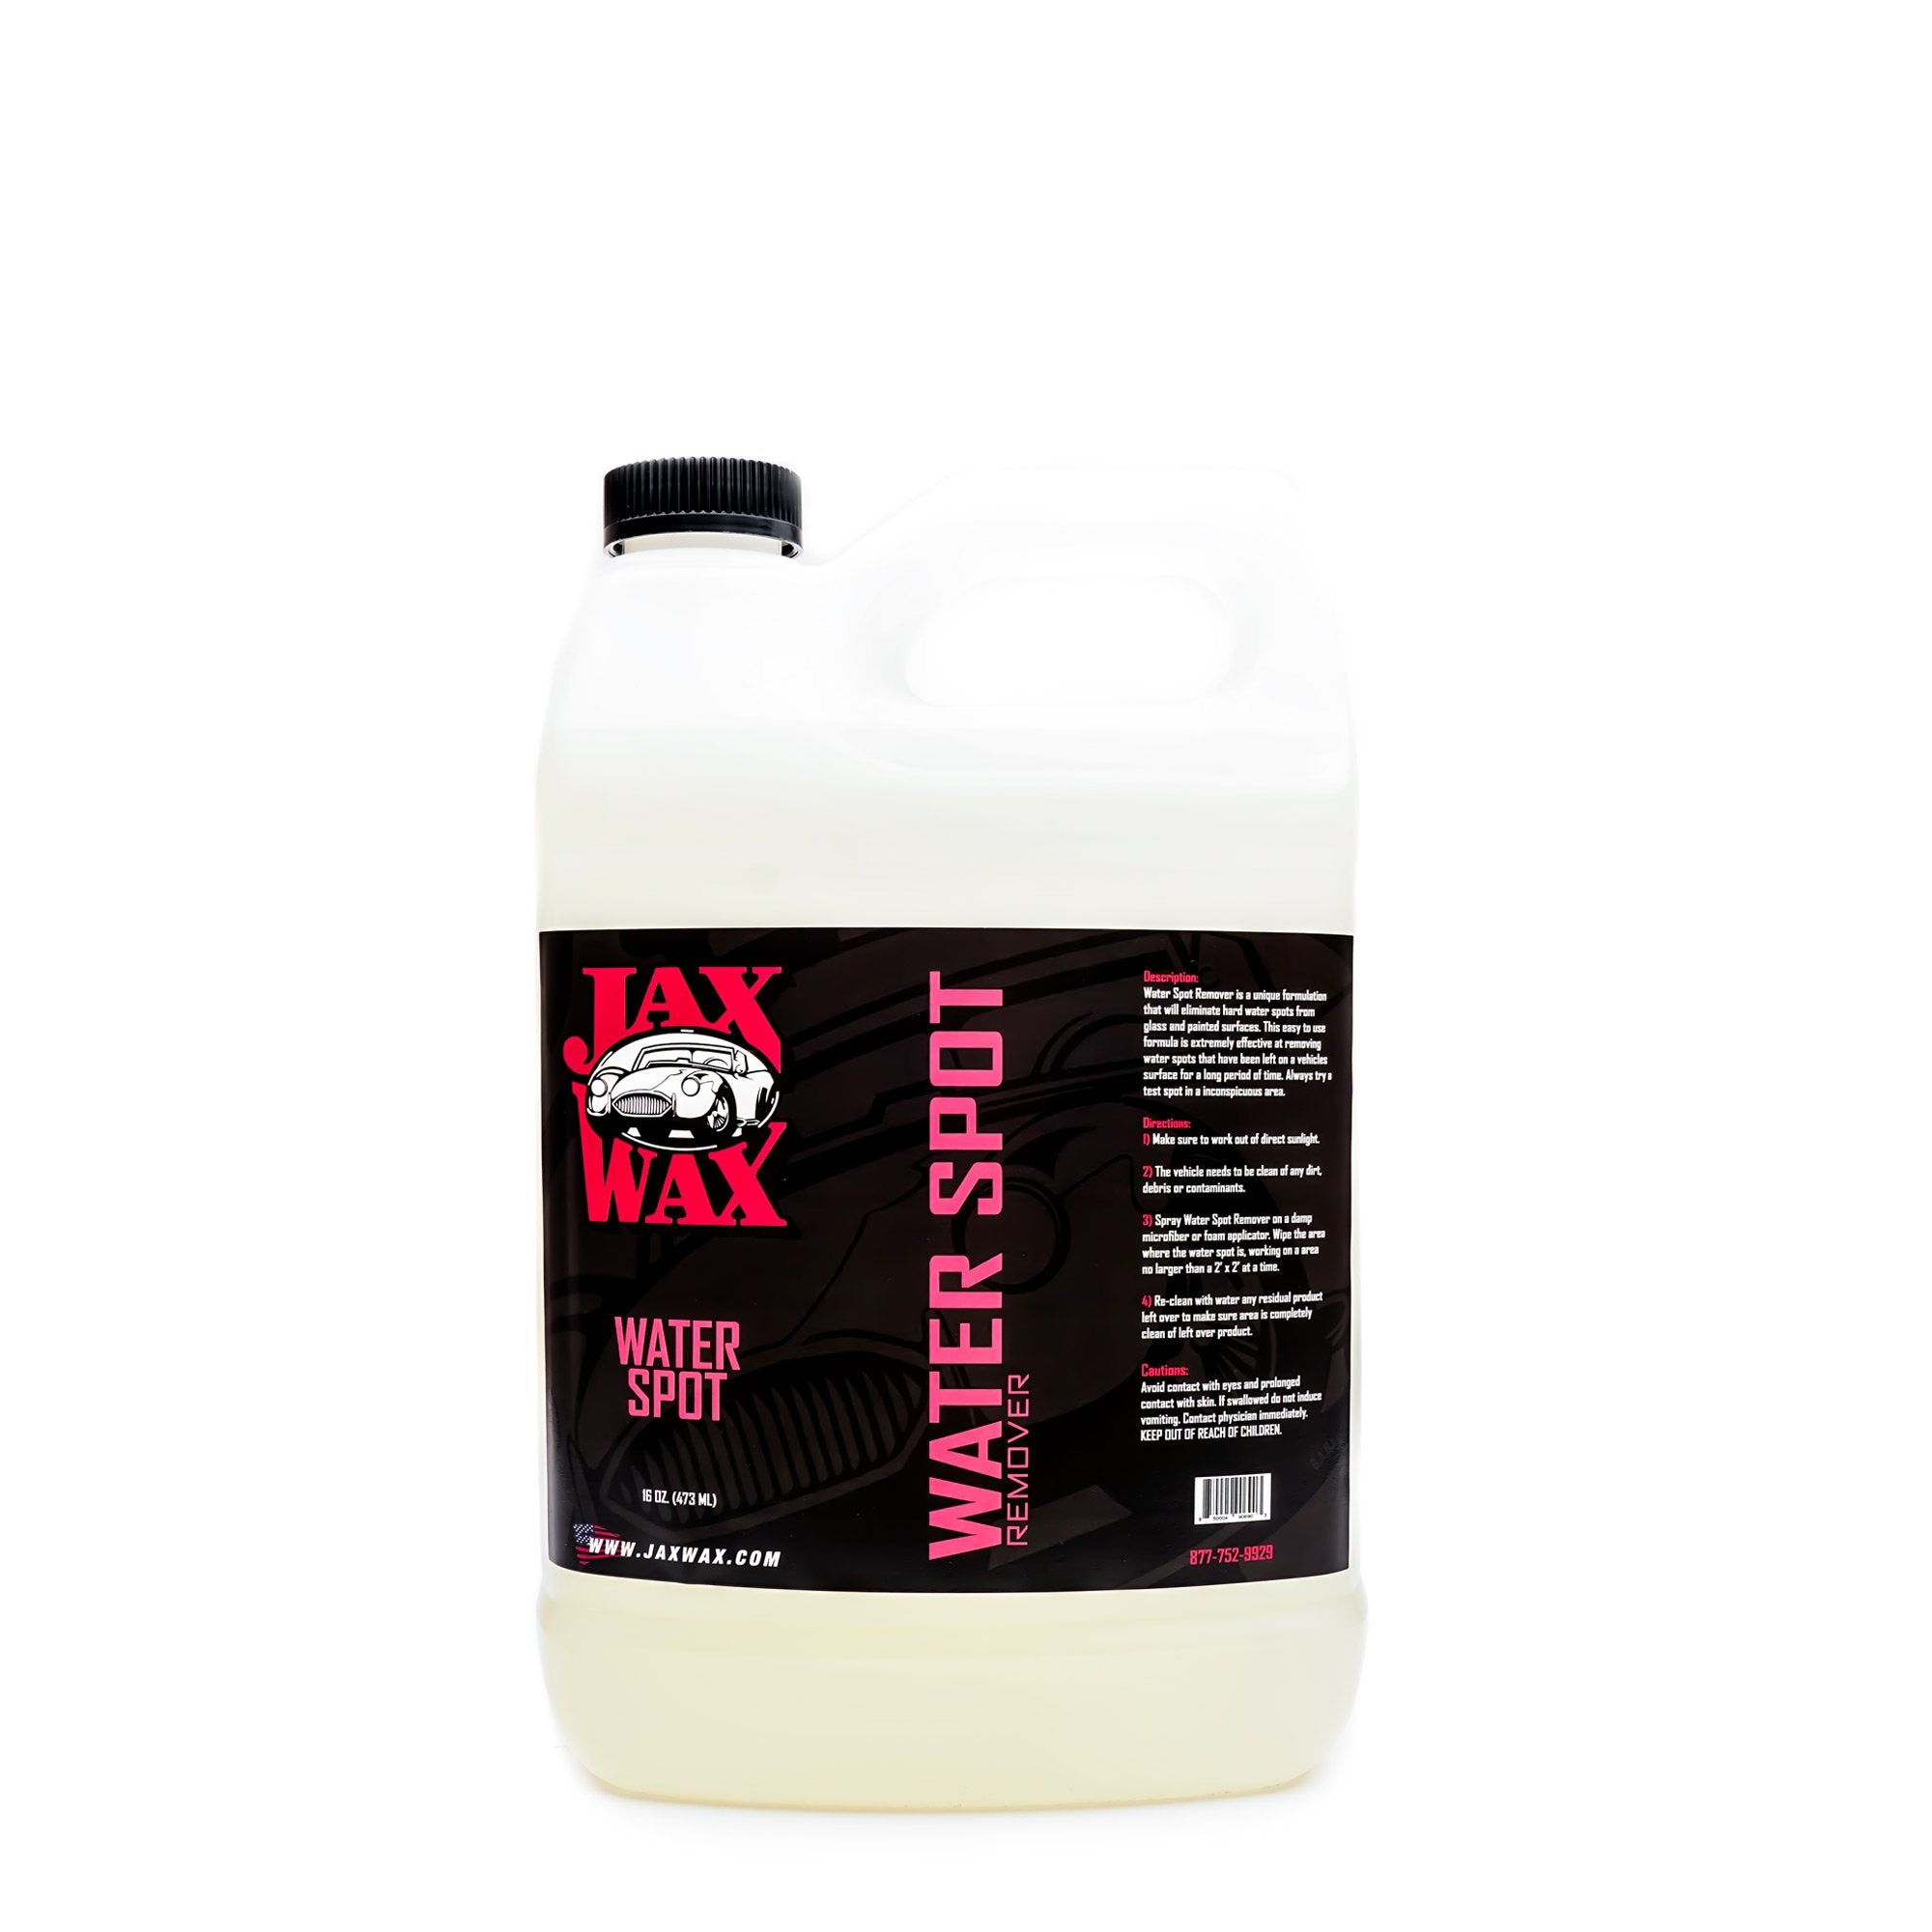 WATER SPOT REMOVER – Jax Wax of Arizona